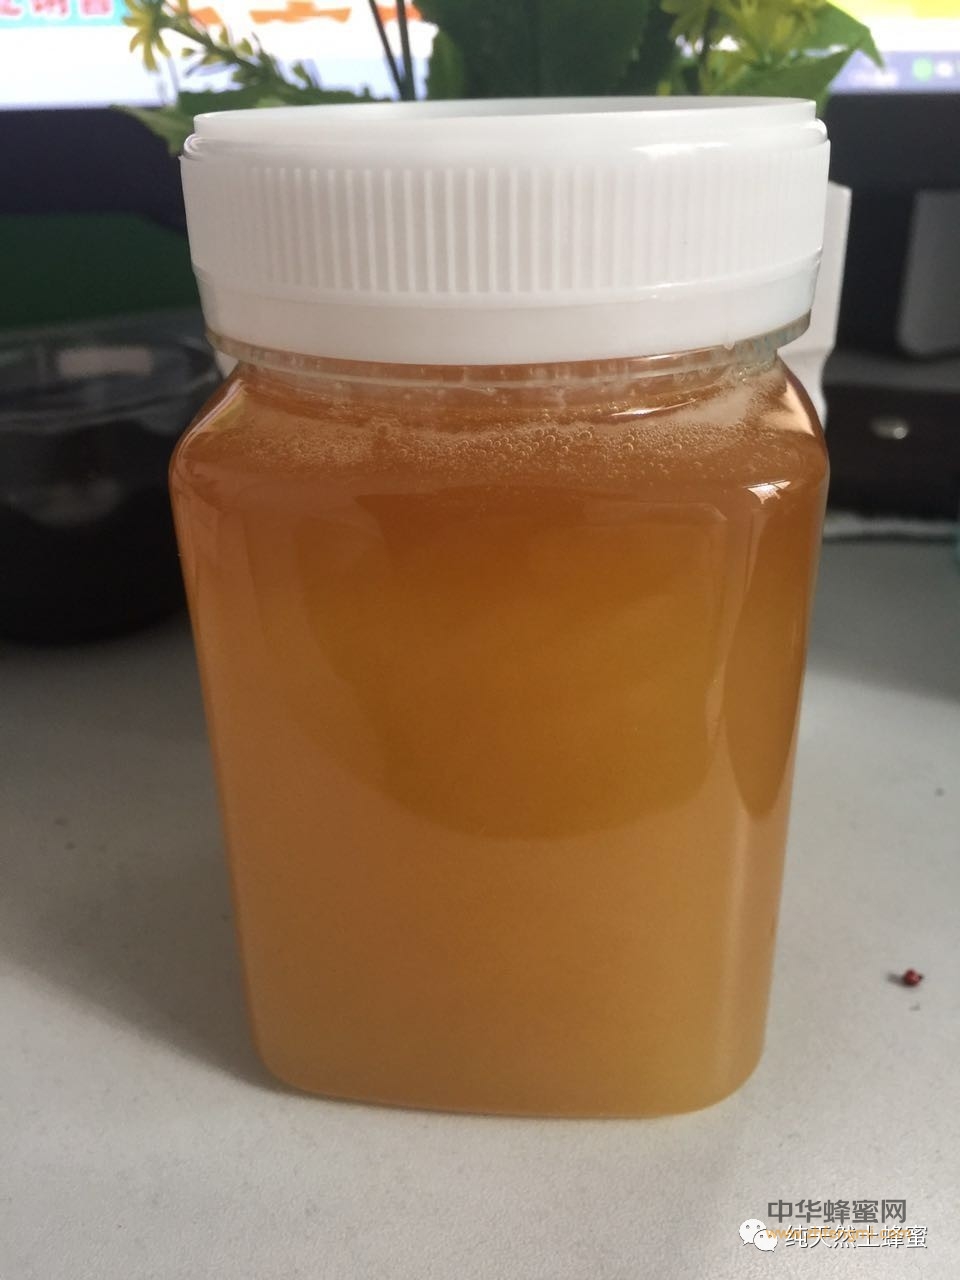 家中常备蜂蜜